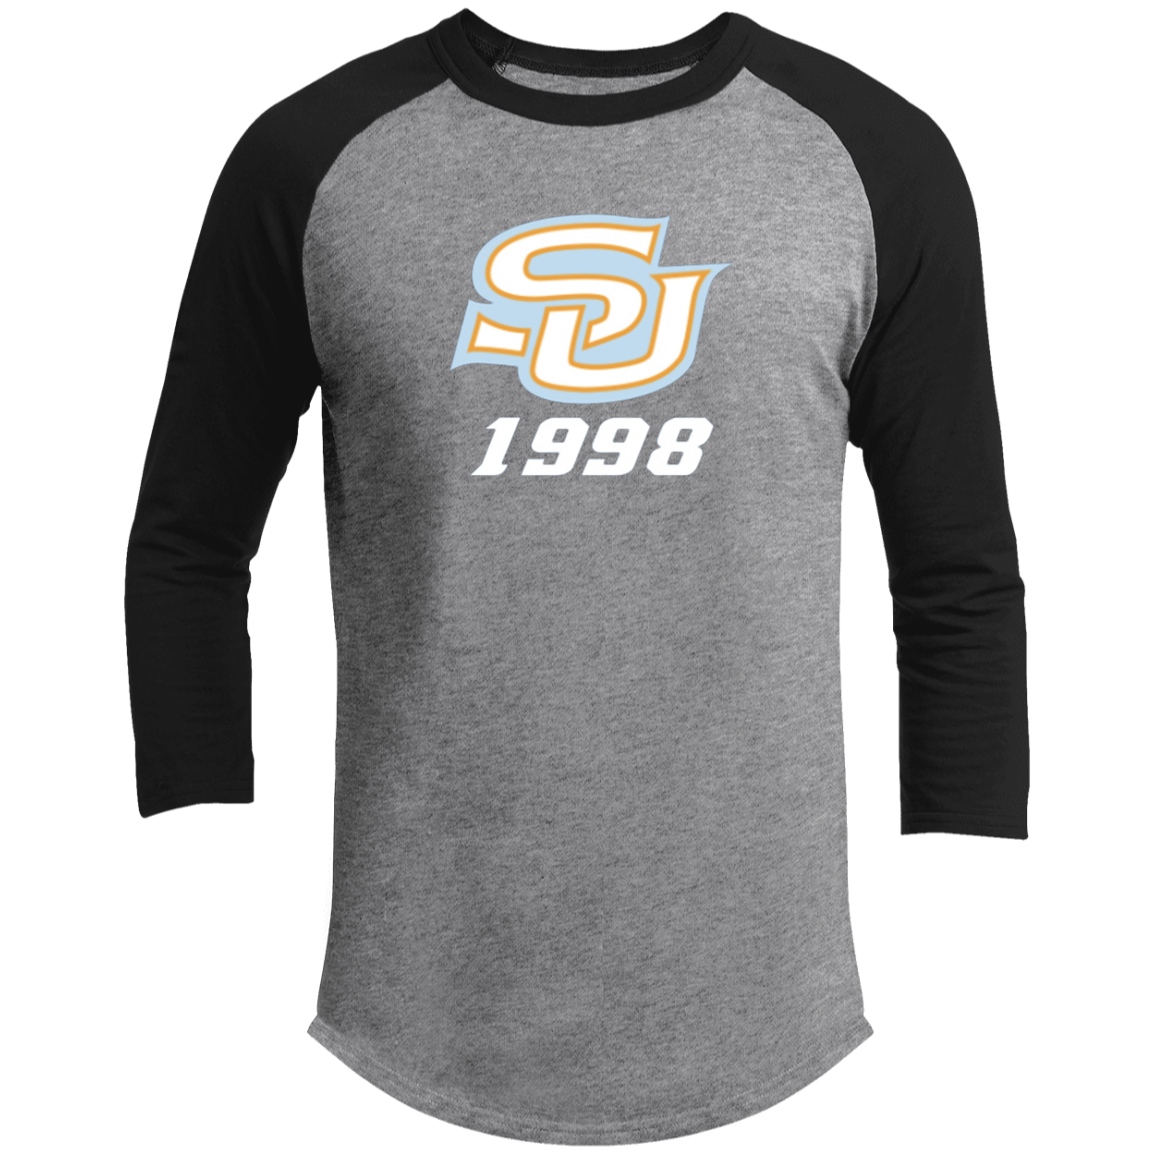 SU c/o 1998 T200 3/4 Raglan Sleeve Shirt